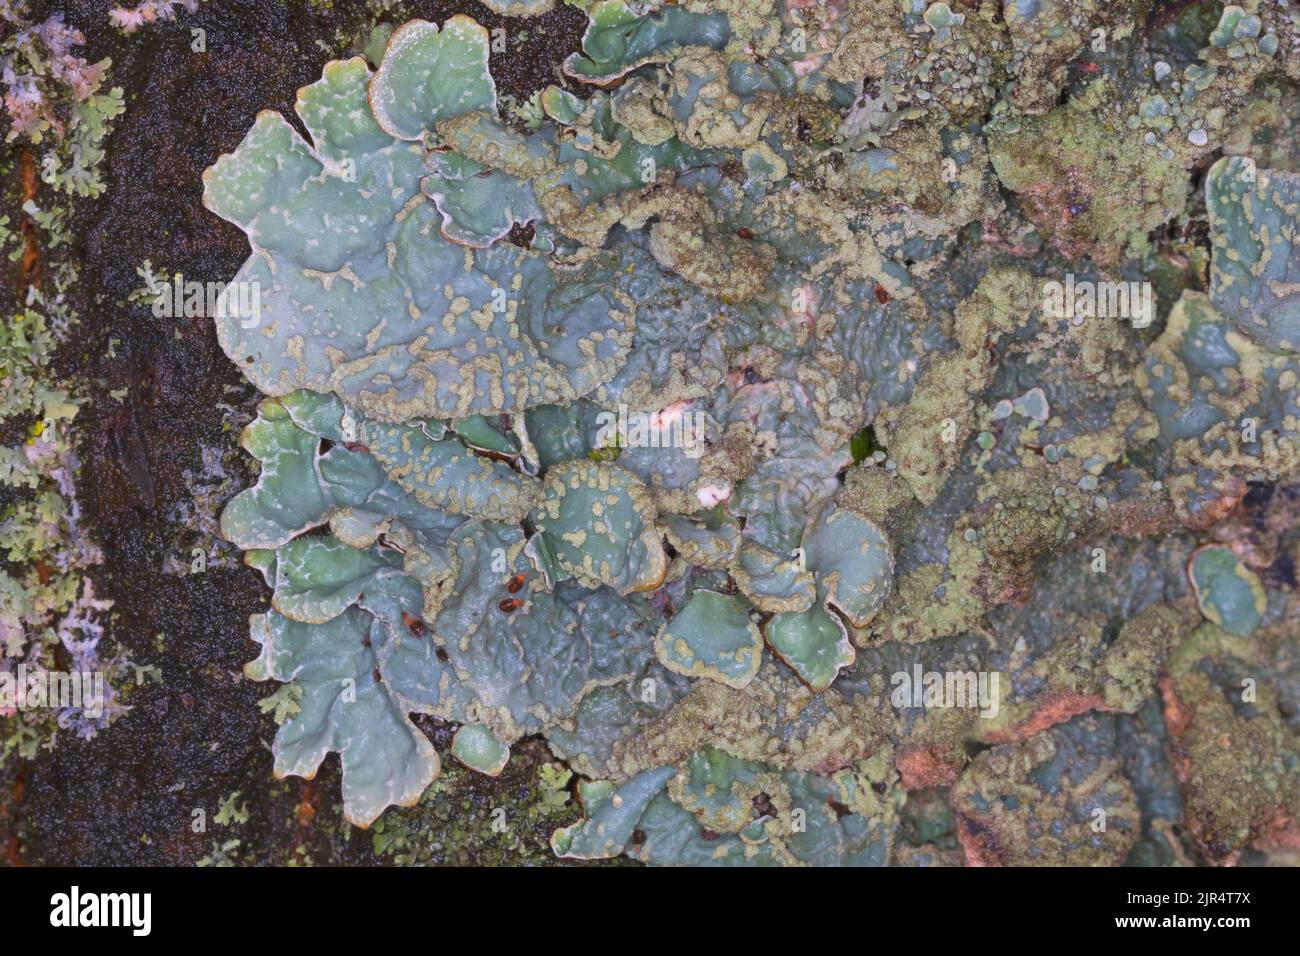 Lichene a scudo martellato, lichene a scudo fessurato, crotto in polvere, lichene a scudo solcato, scudo in polvere, Waxpaper lichen (Parmelia sulcata), sul Foto Stock